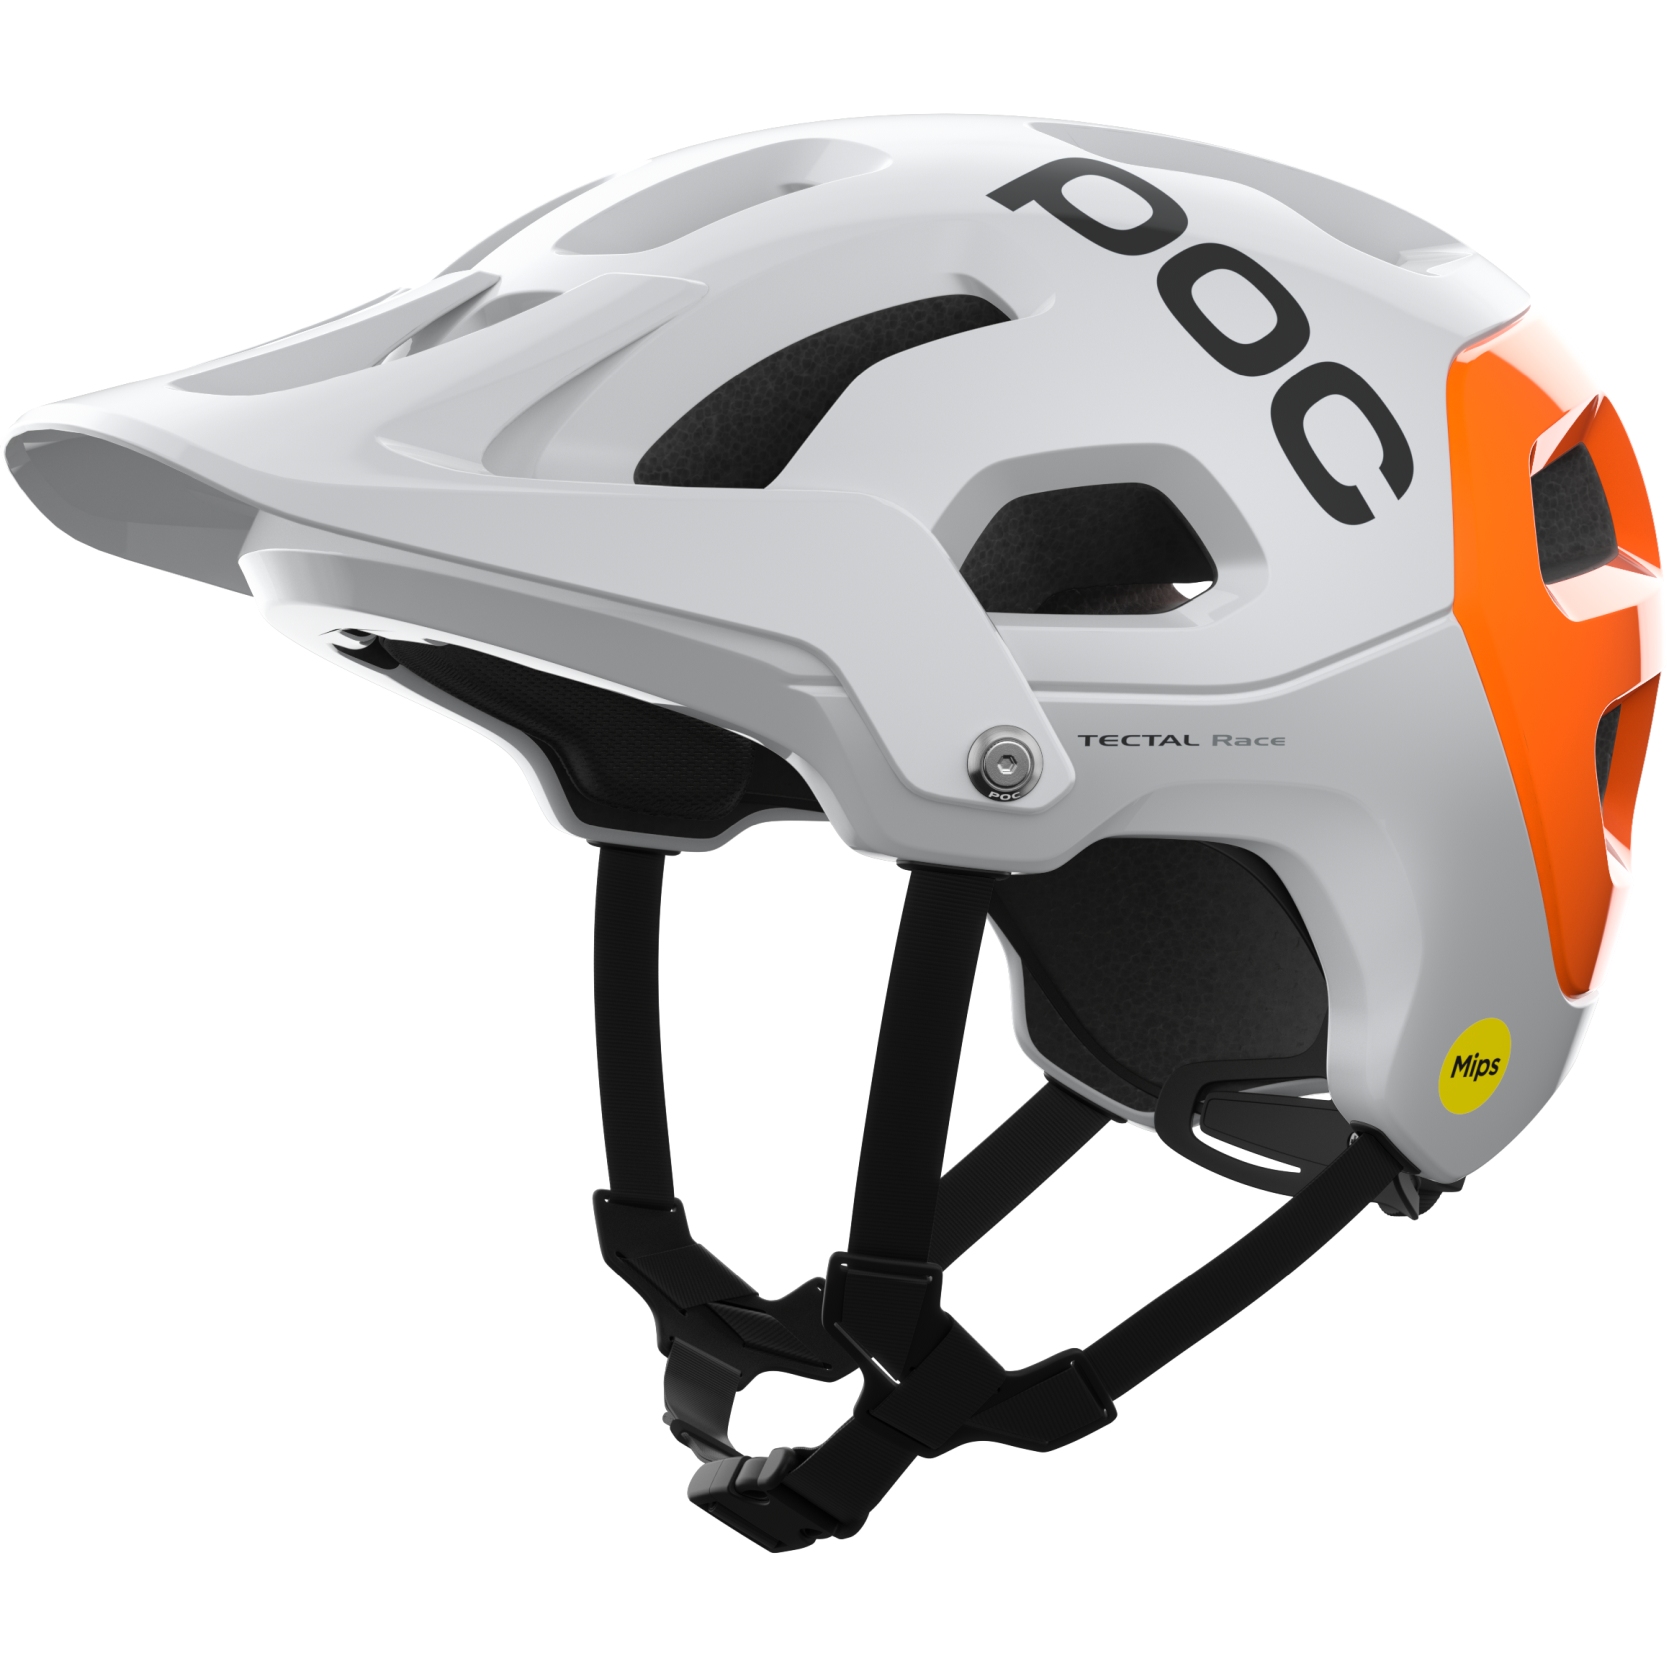 Bild von POC Tectal Race MIPS NFC Helm - 8043 hydrogen white/fluorescent orange avip